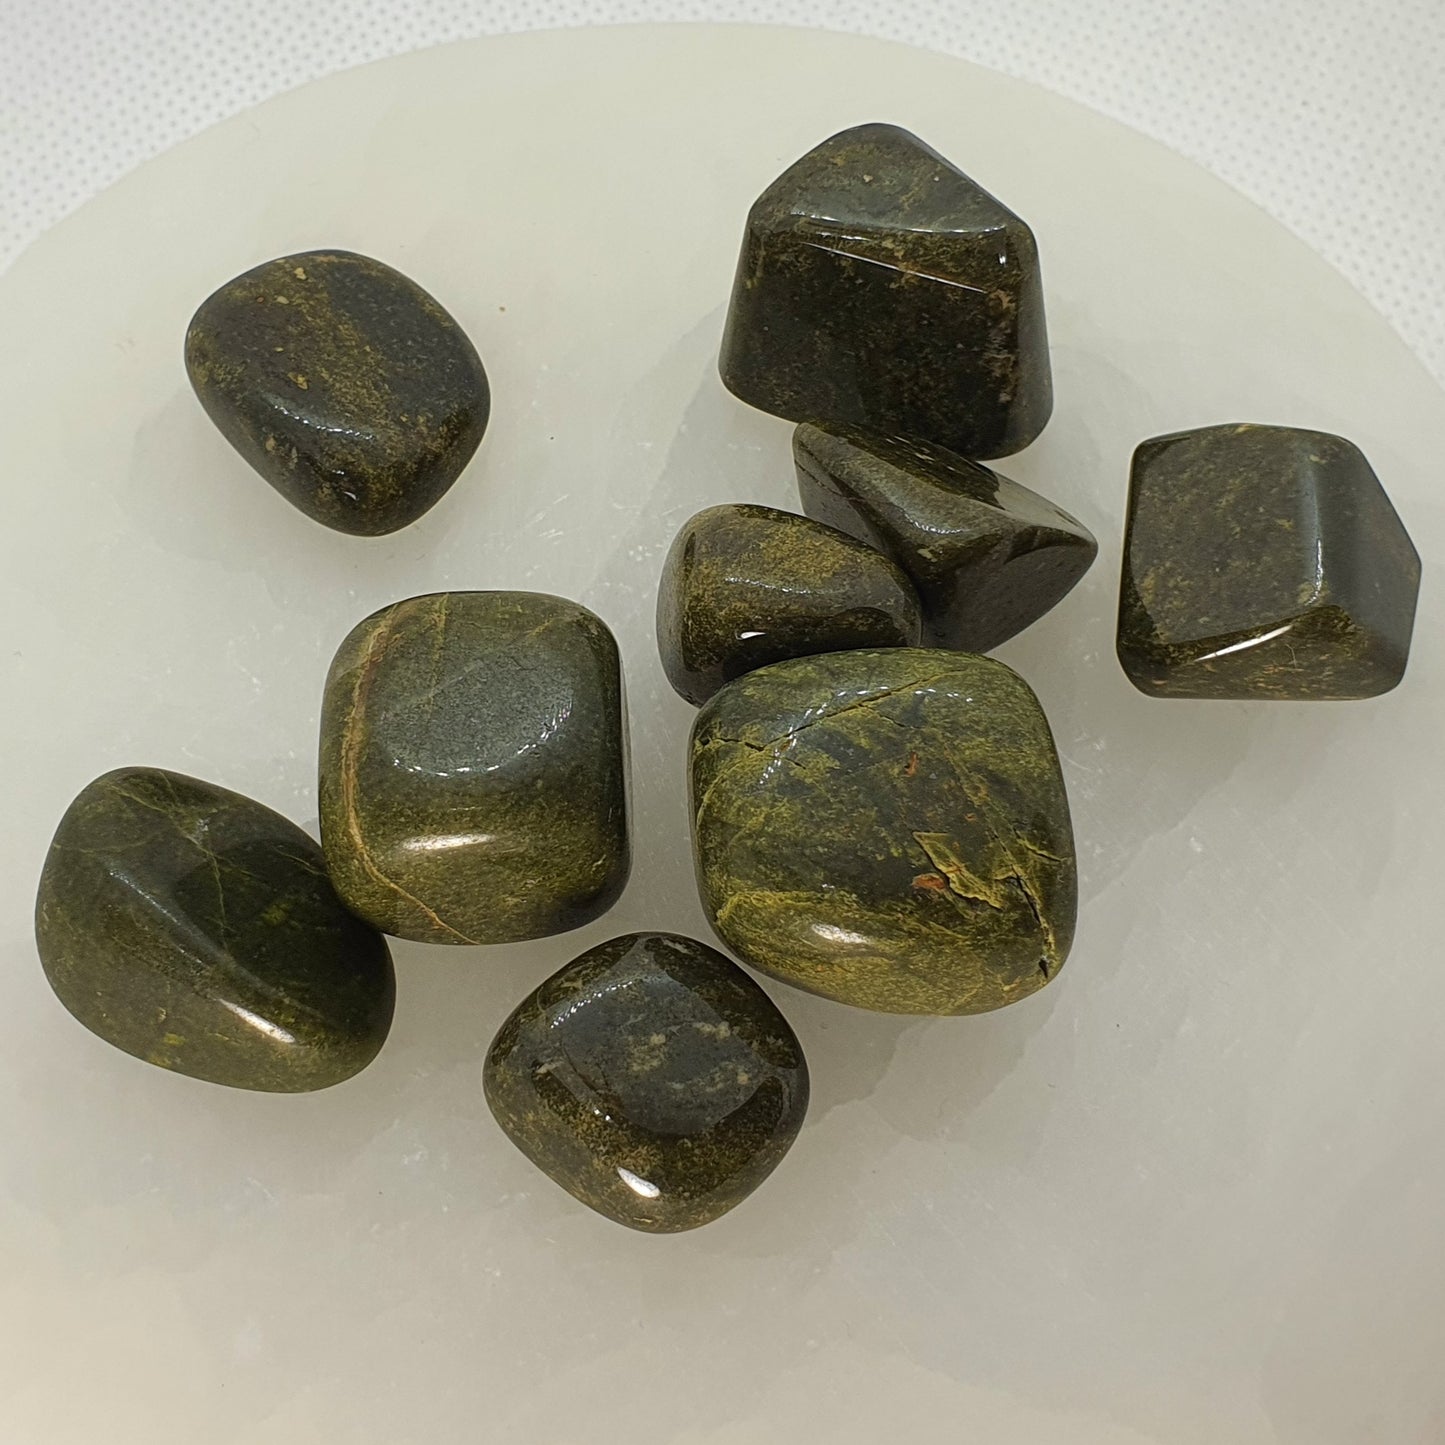 Crystals - Vesuvianite (Vasanite) Tumbled Stones